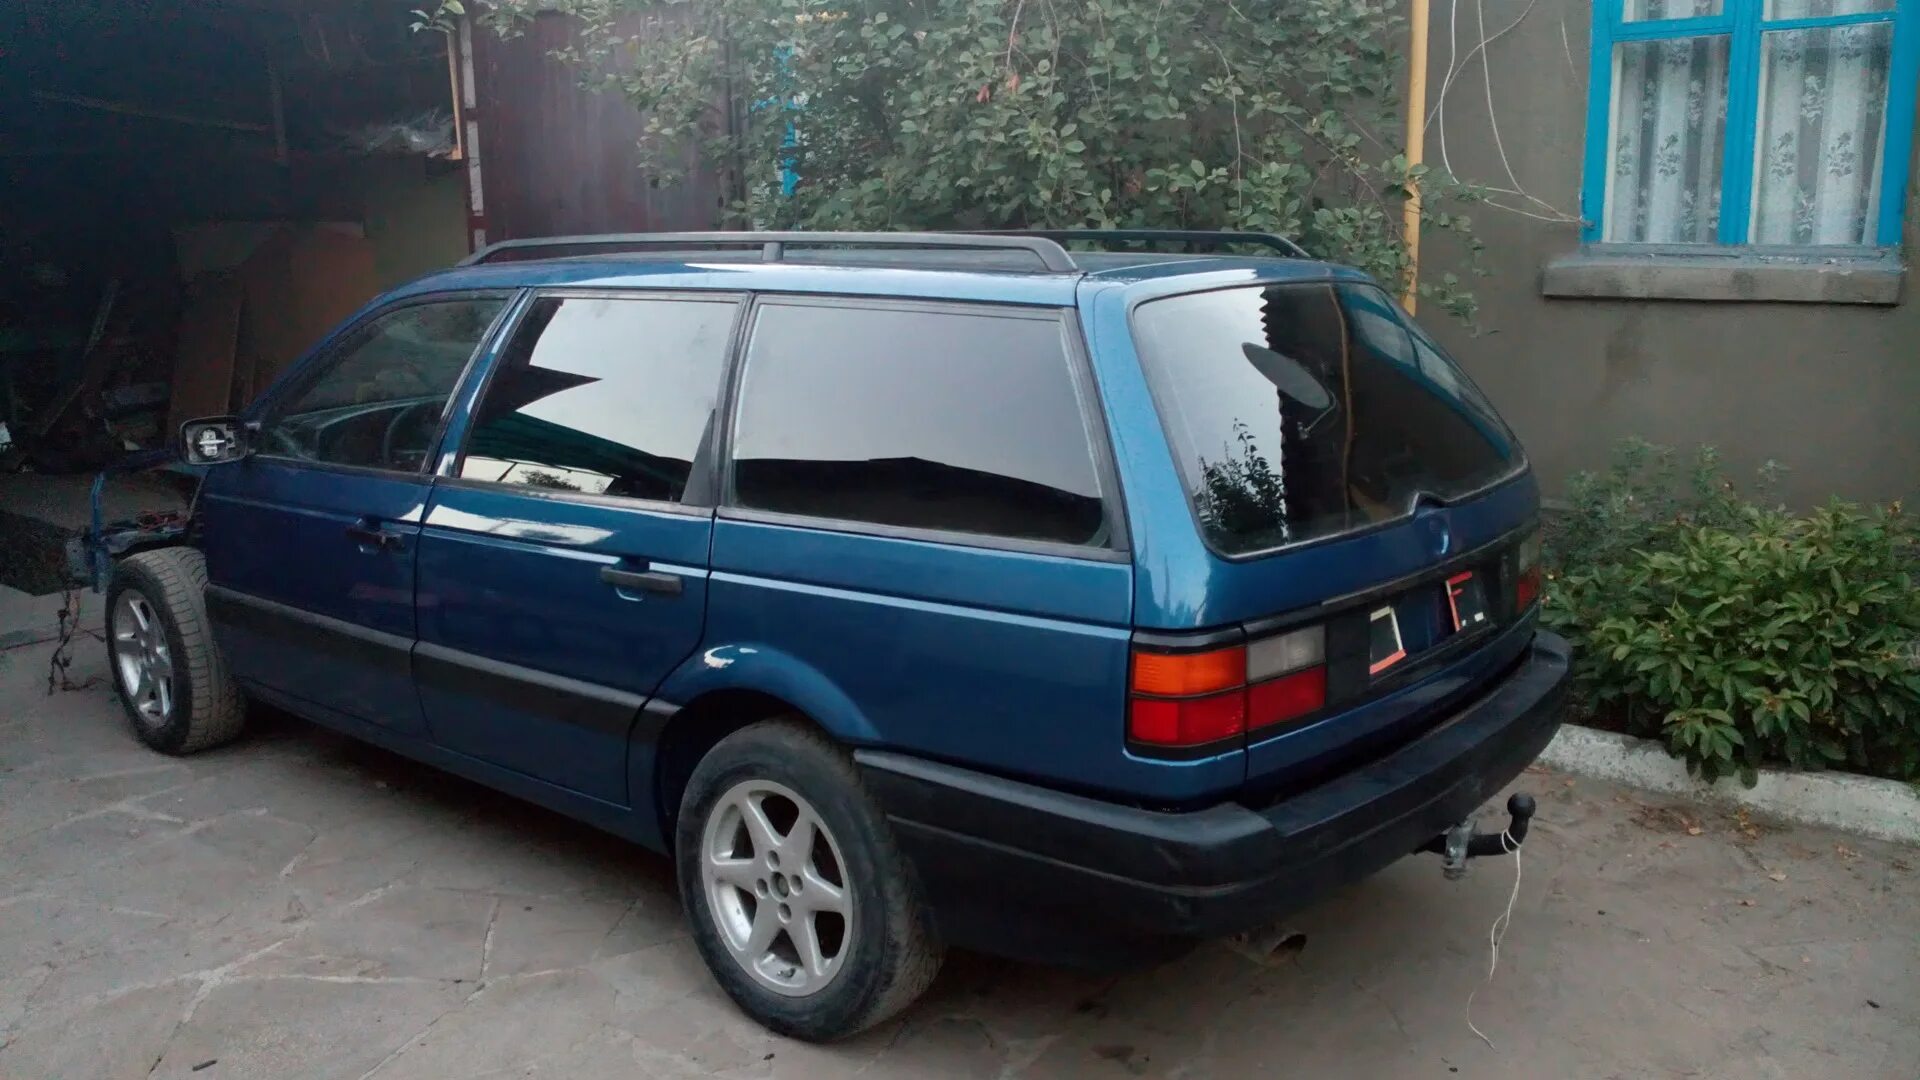 Купить бу фольксваген б3. Volkswagen Passat b3 1993 универсал. Volkswagen Passat b3 1990 универсал. Фольксваген Пассат б3 универсал синий. Volkswagen Passat b3 универсал синий.